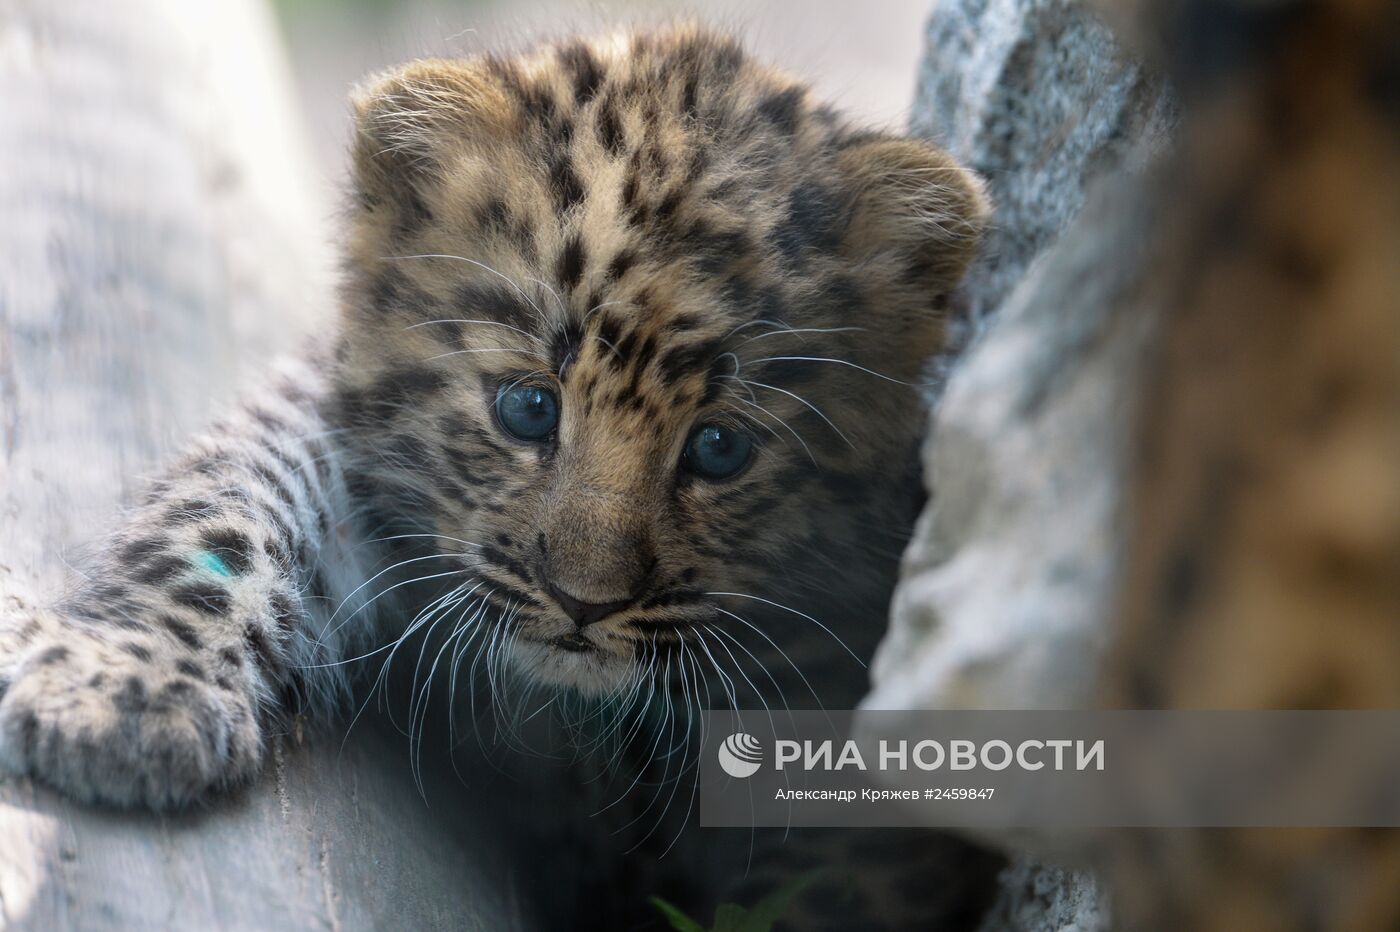 Детеныш дальневосточного леопарда родился в Новосибирске